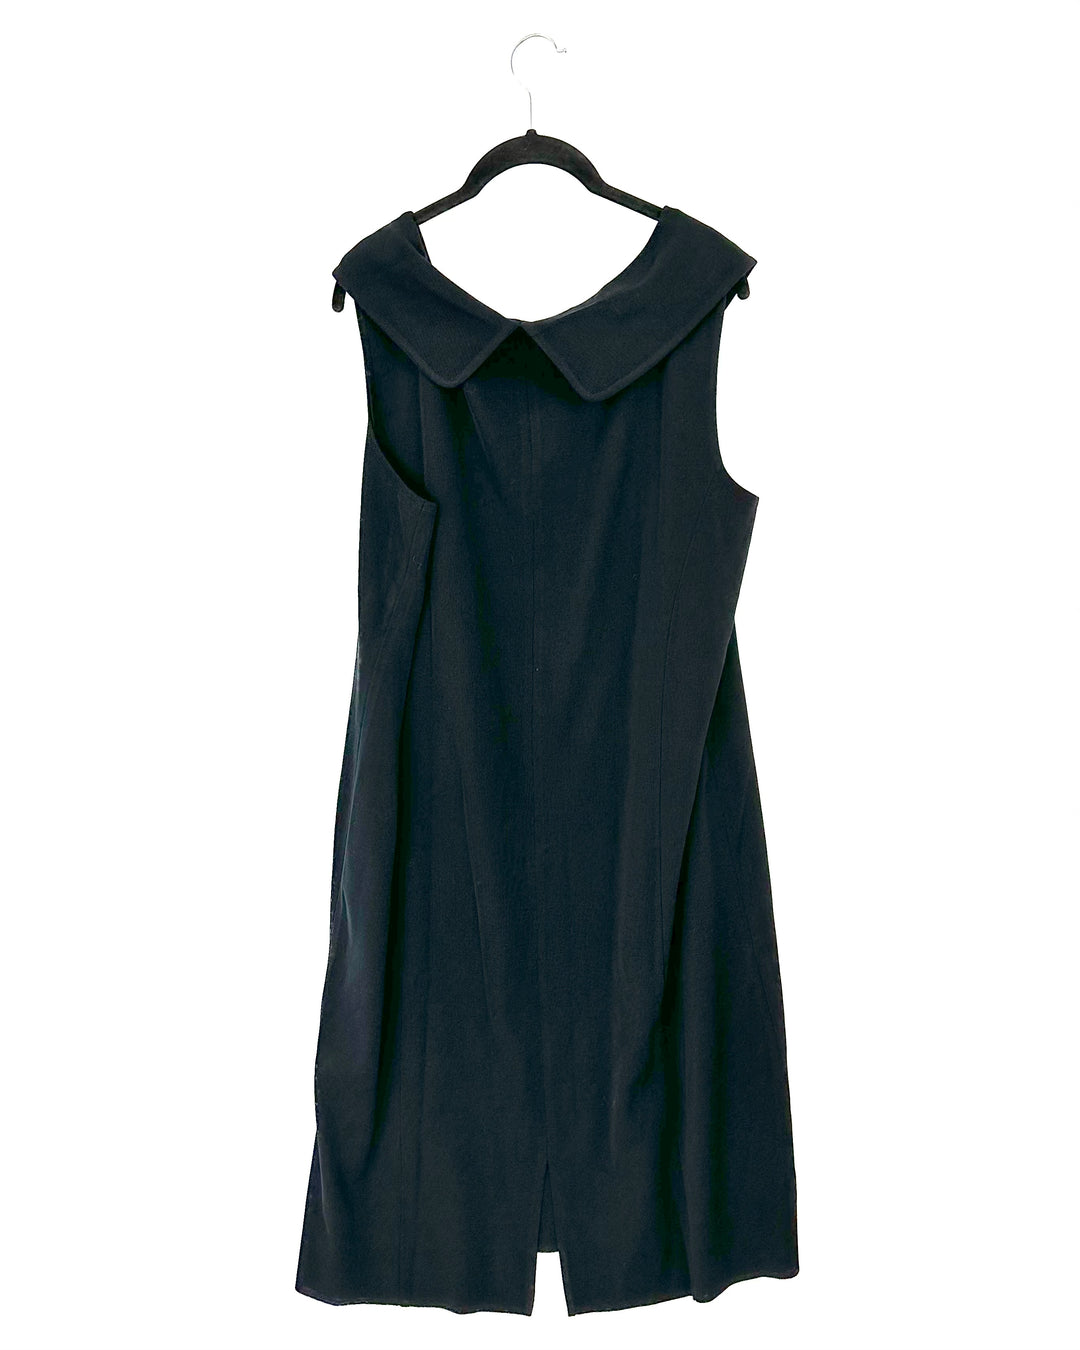 Black Knit Dress - Size 20W - 22W